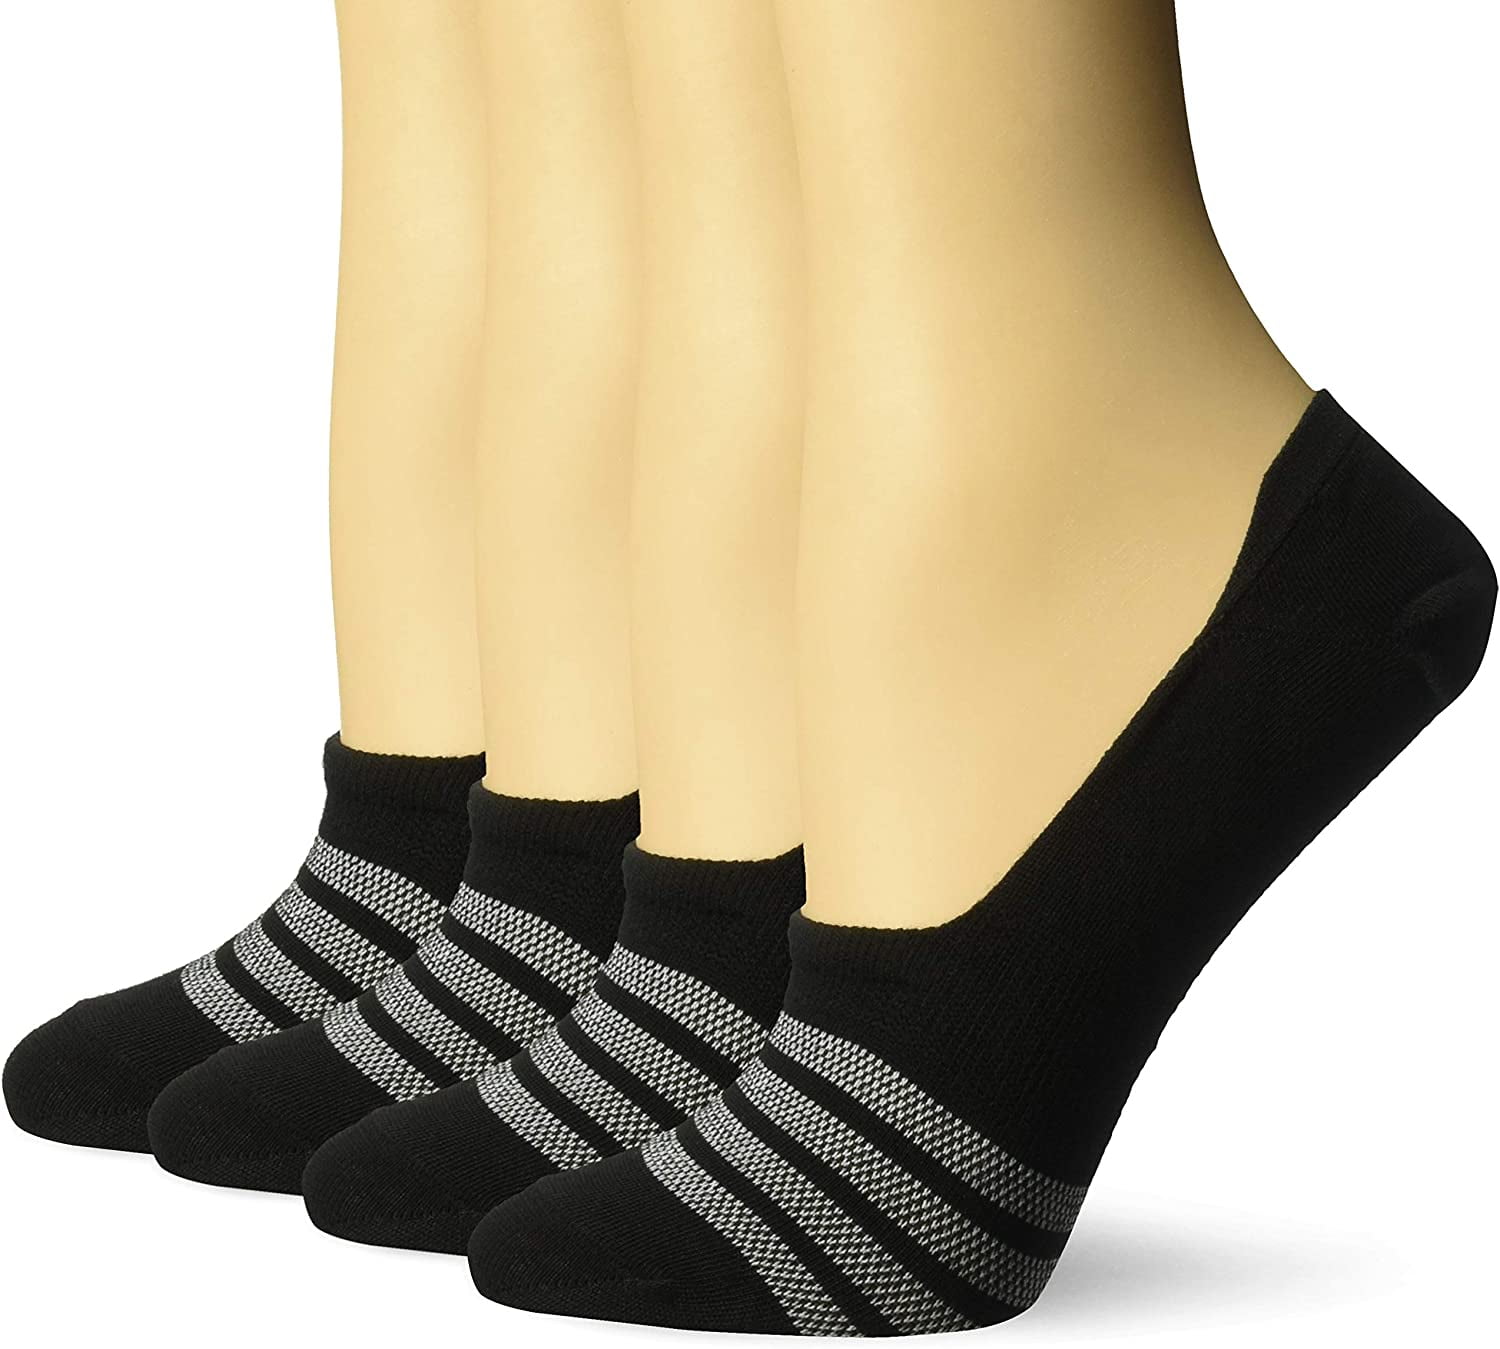 Hanes Ultimate Girls Liner Socks 4-Pack